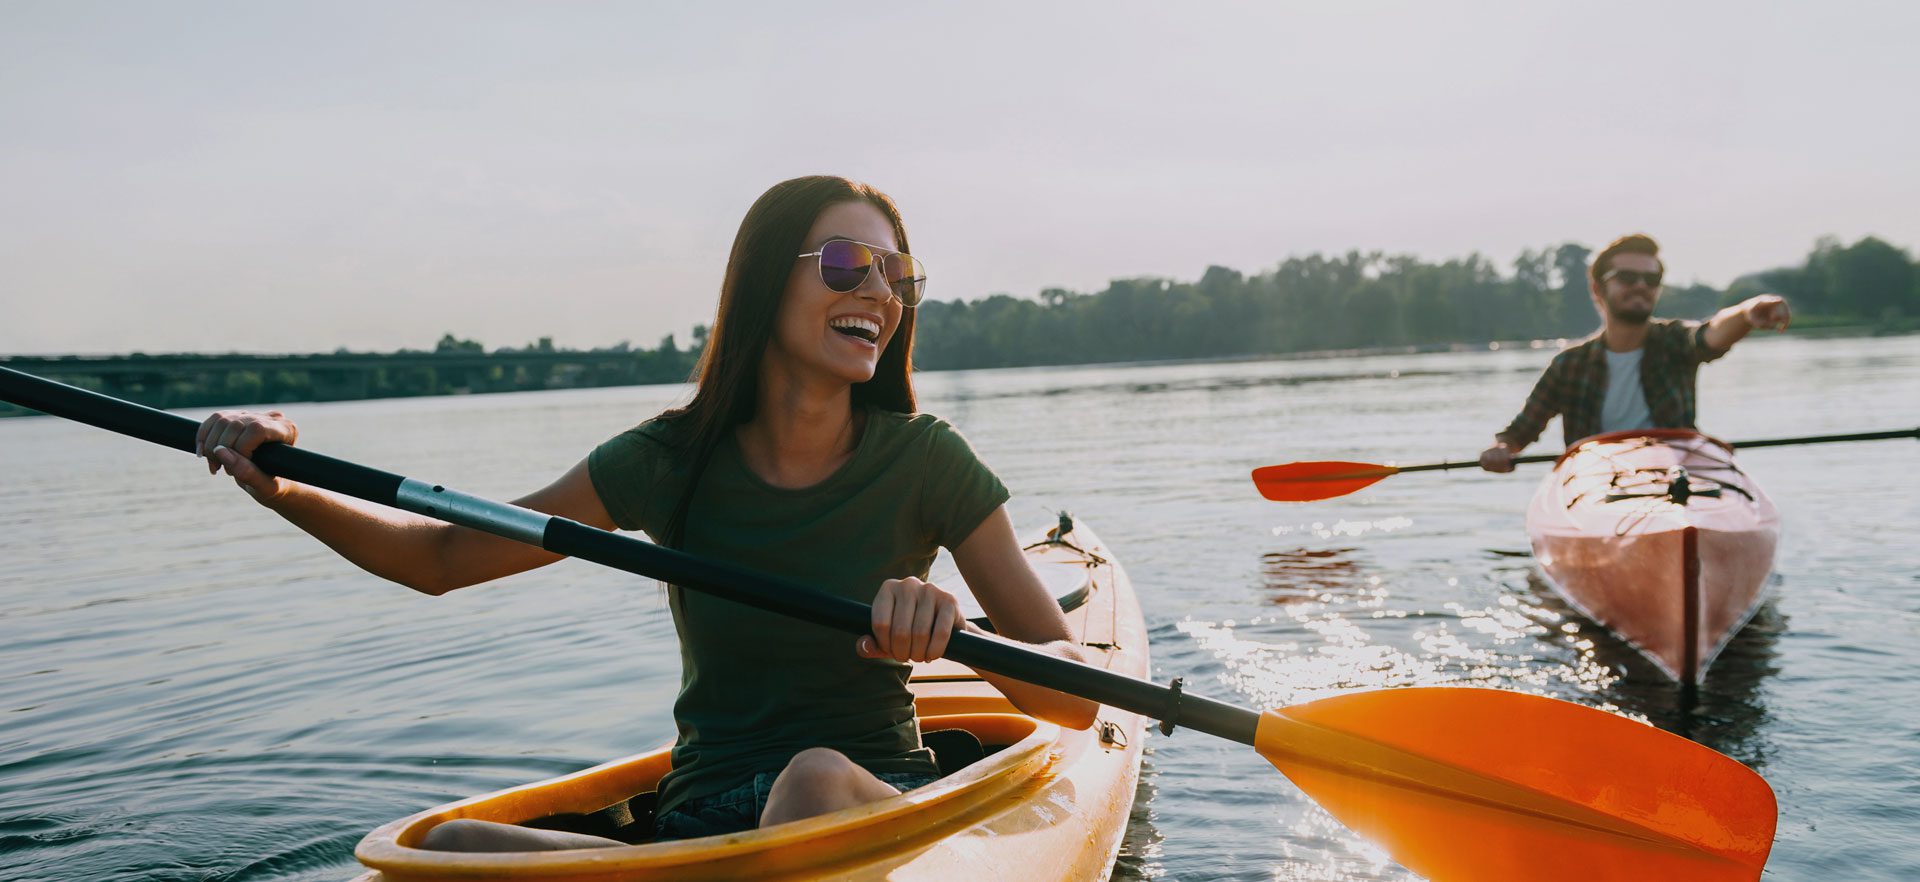 woman kayaking on water